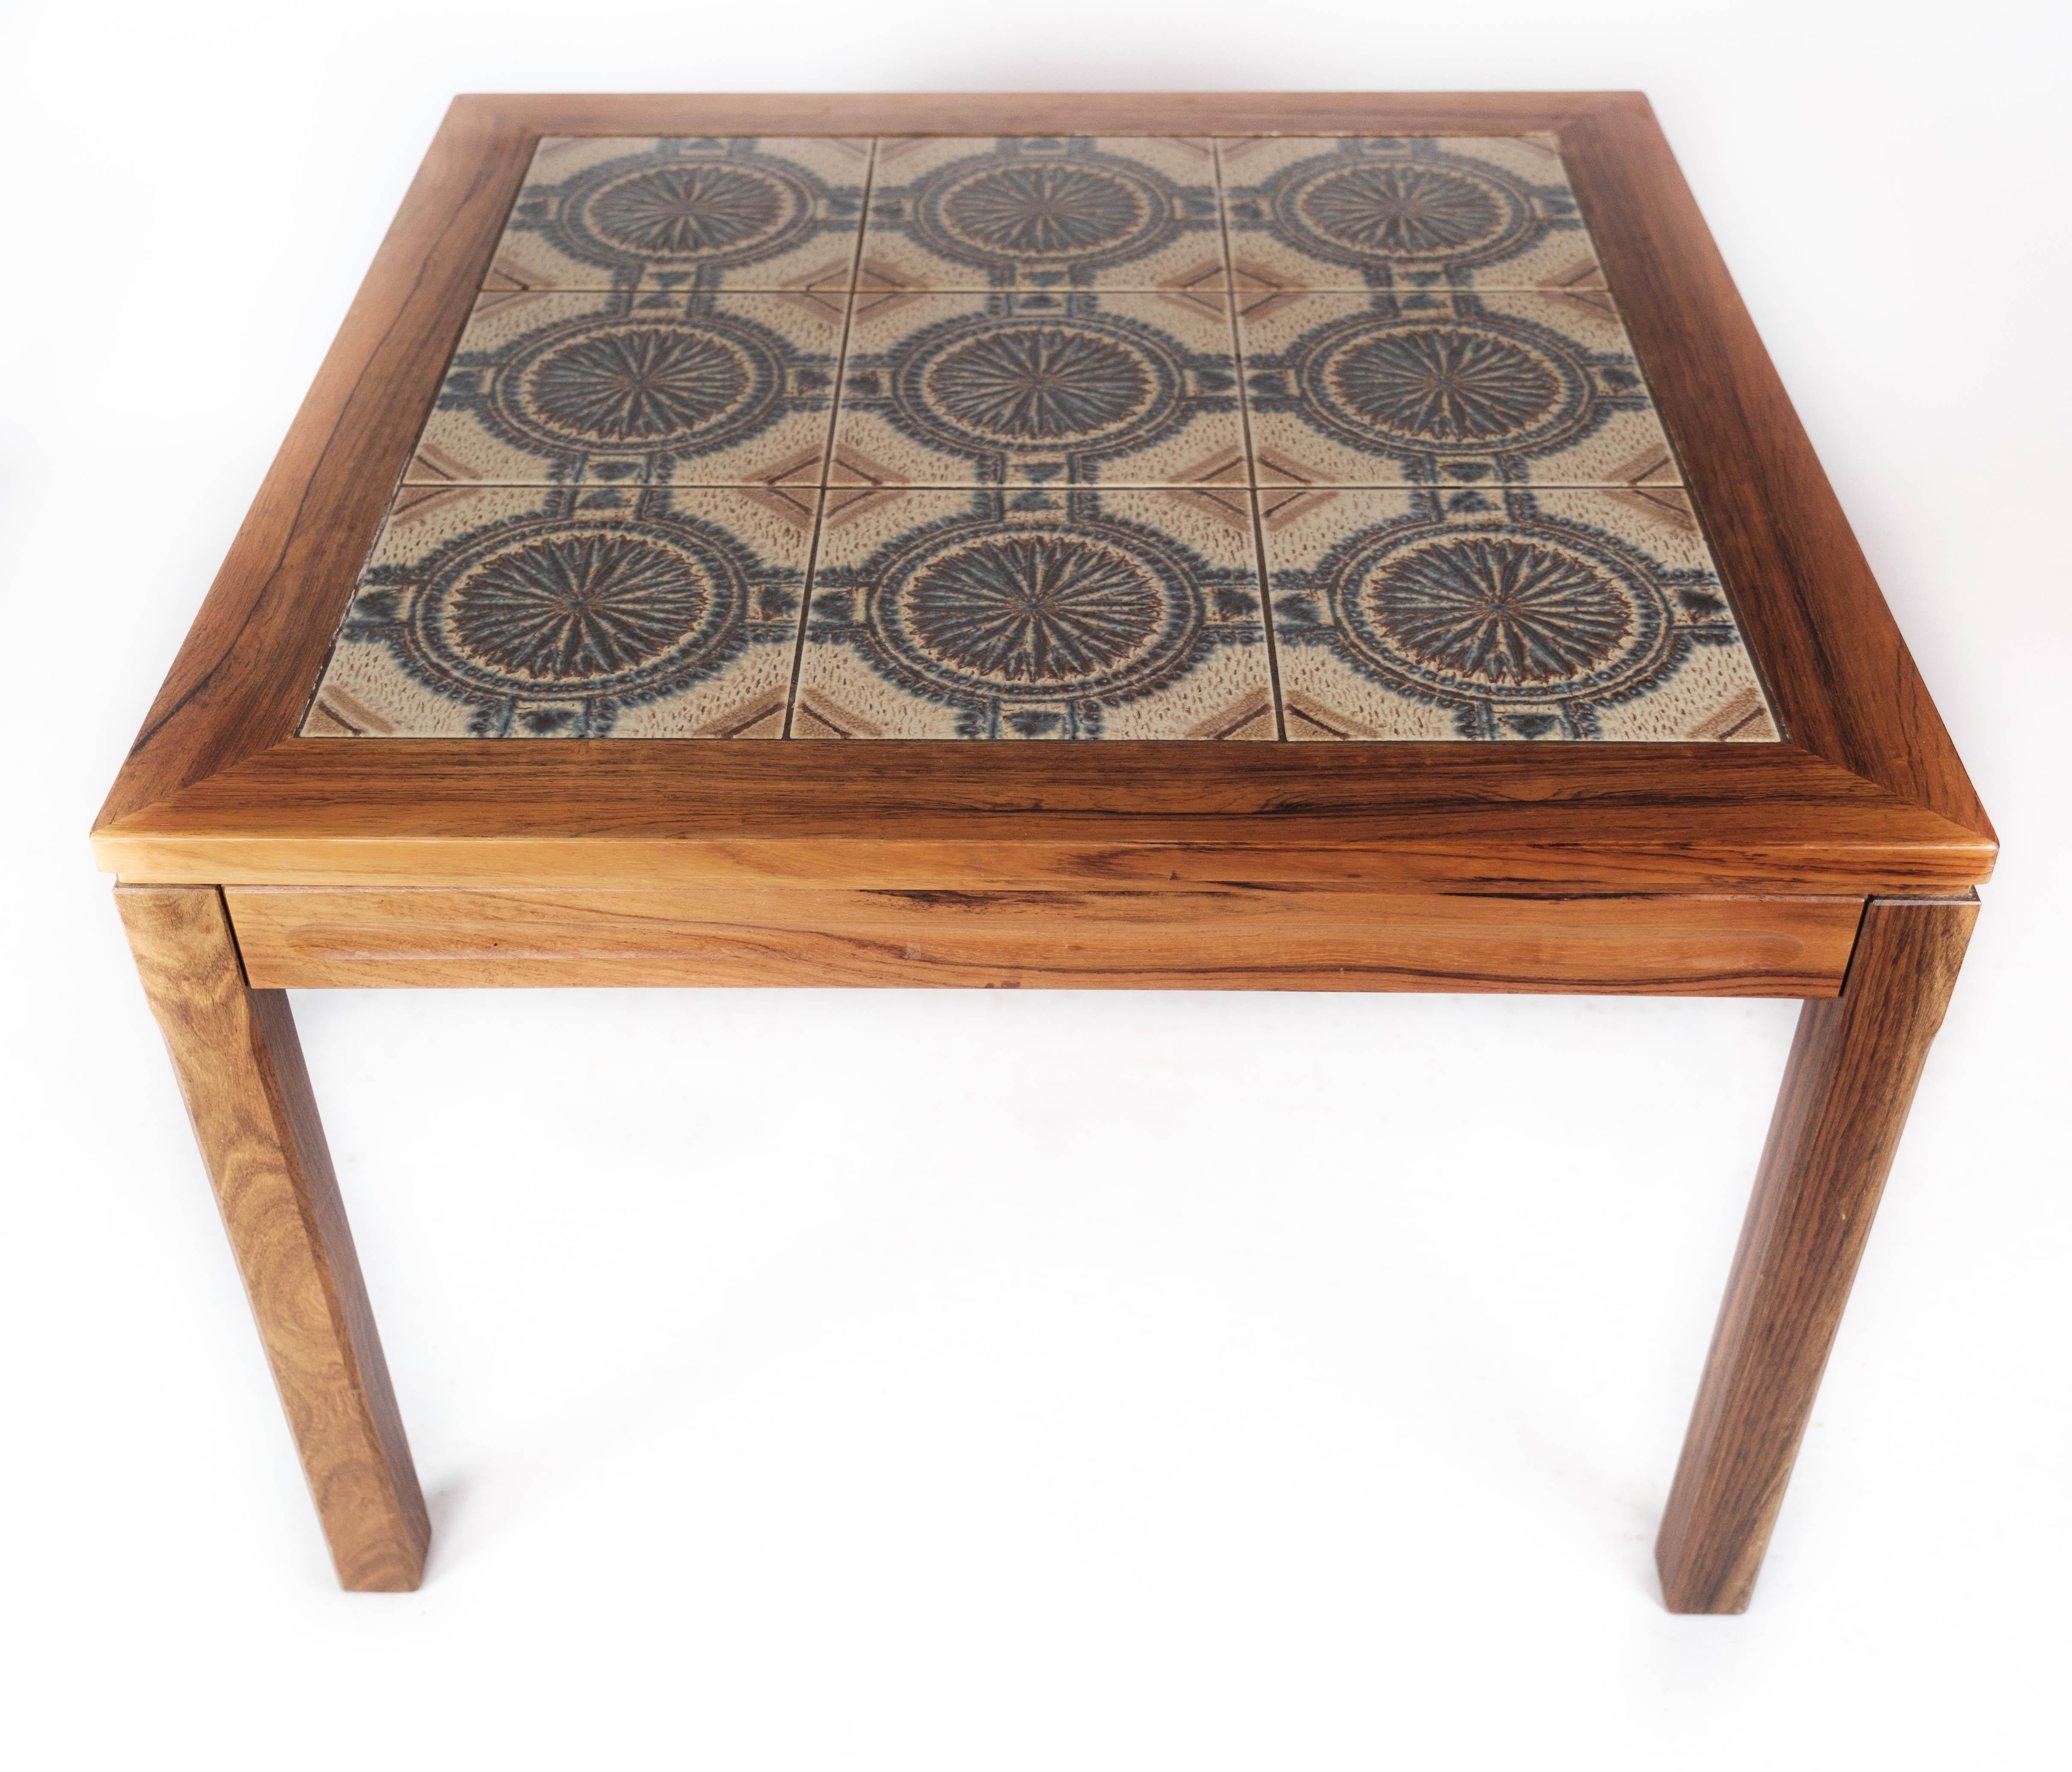 Der Couchtisch aus Palisanderholz im dänischen Design der 1960er Jahre ist ein schönes Beispiel für die Ästhetik und Qualität der Handwerkskunst.

Die warmen Farbtöne und die schöne Zeichnung des Palisanderholzes verleihen dem Tisch eine zeitlose